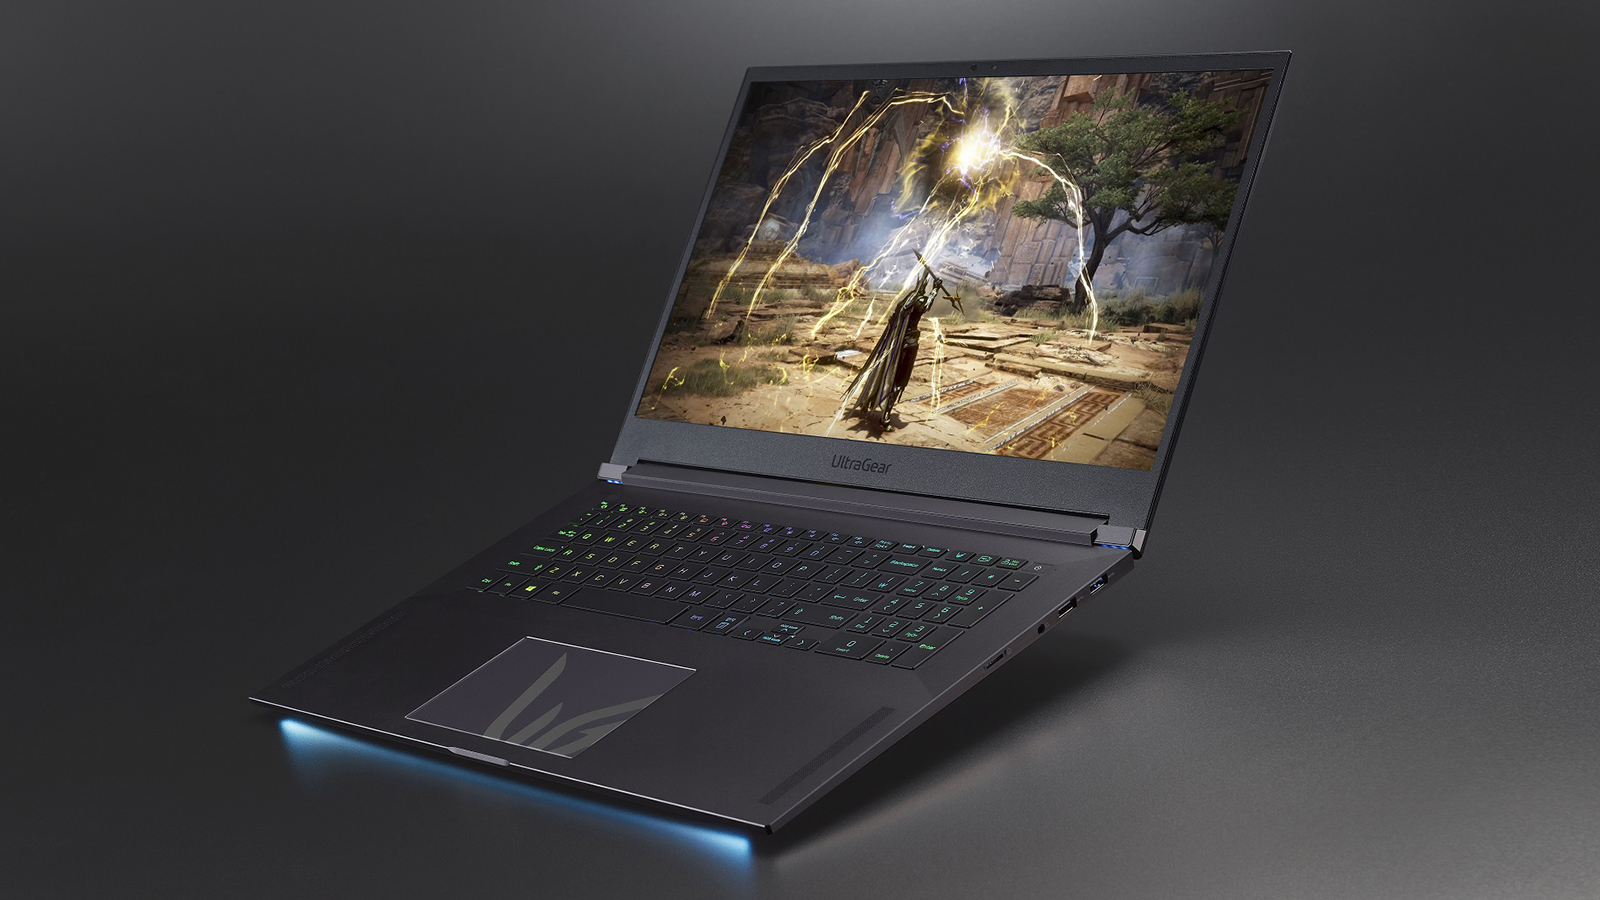 LG UltraGear Gaming Laptop